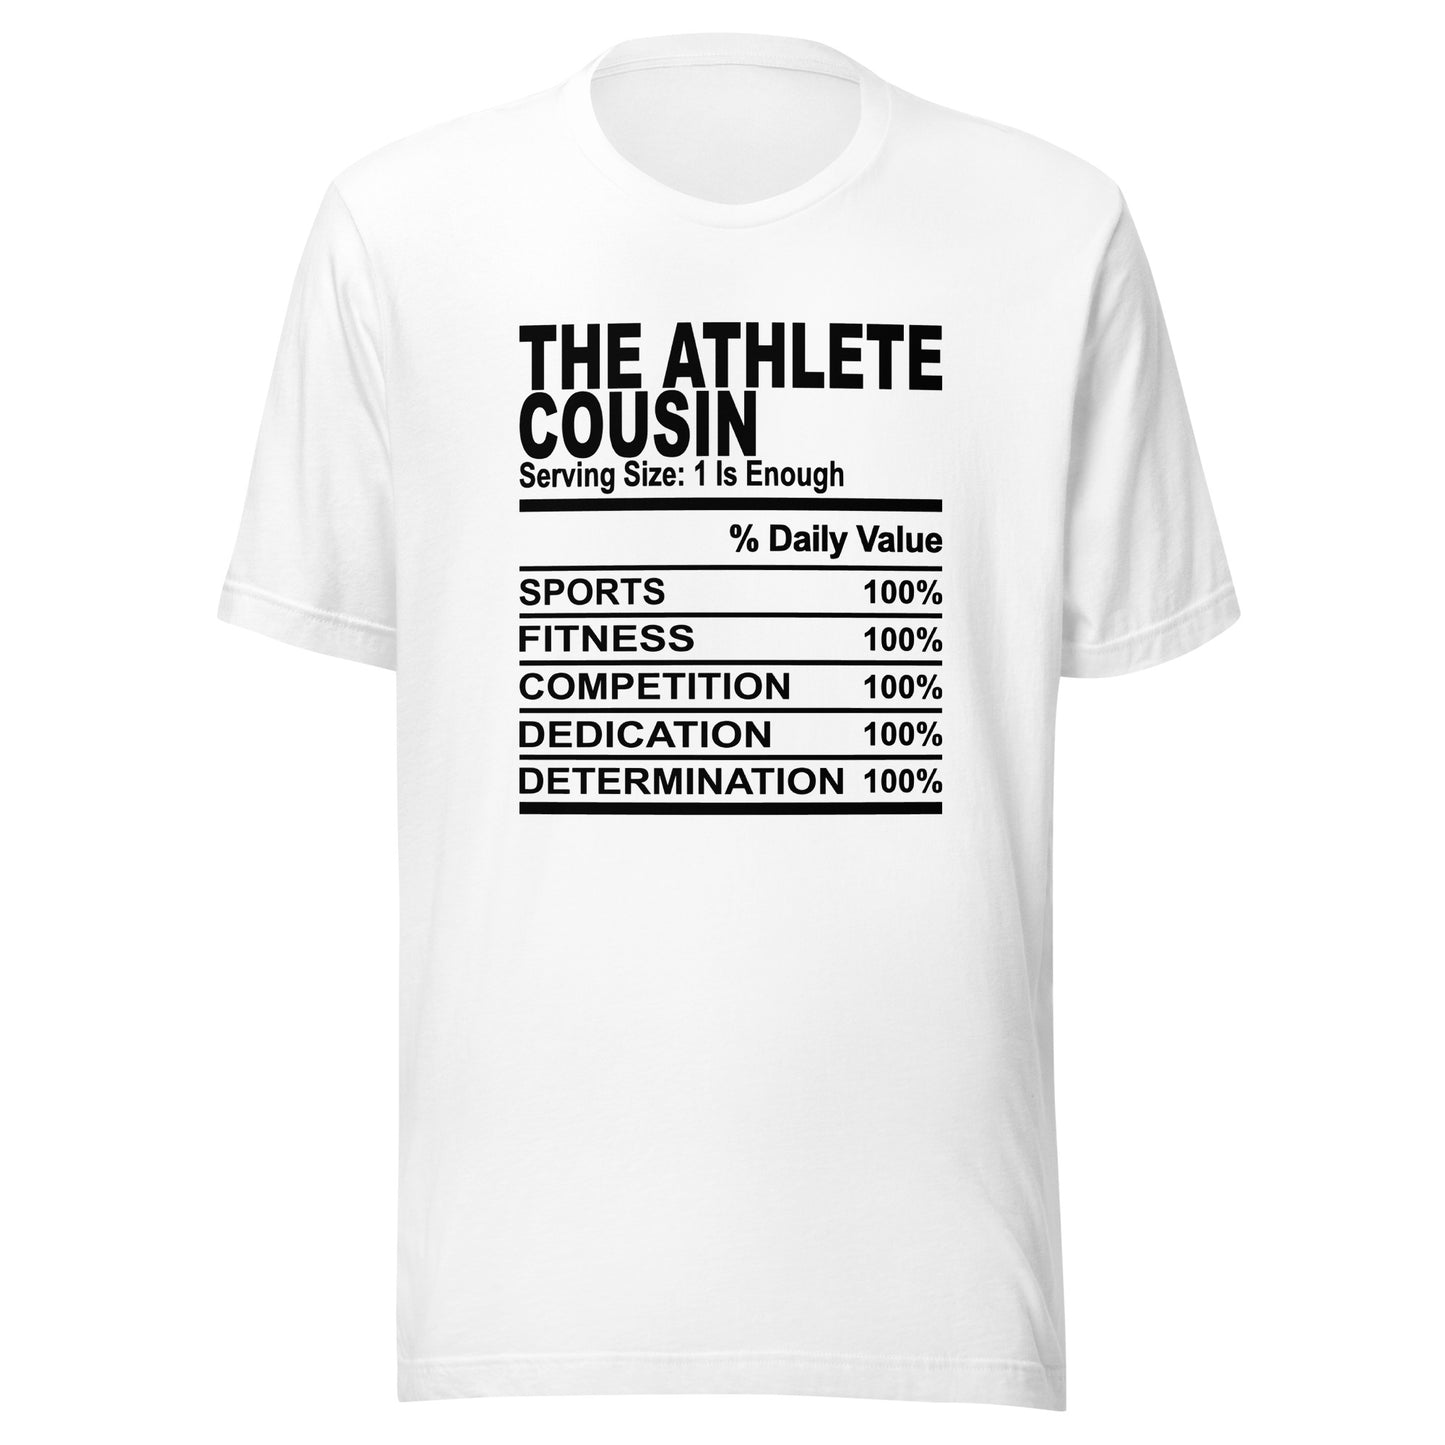 THE ATHLETIC COUSIN - S-M - Unisex T-Shirt (black print)